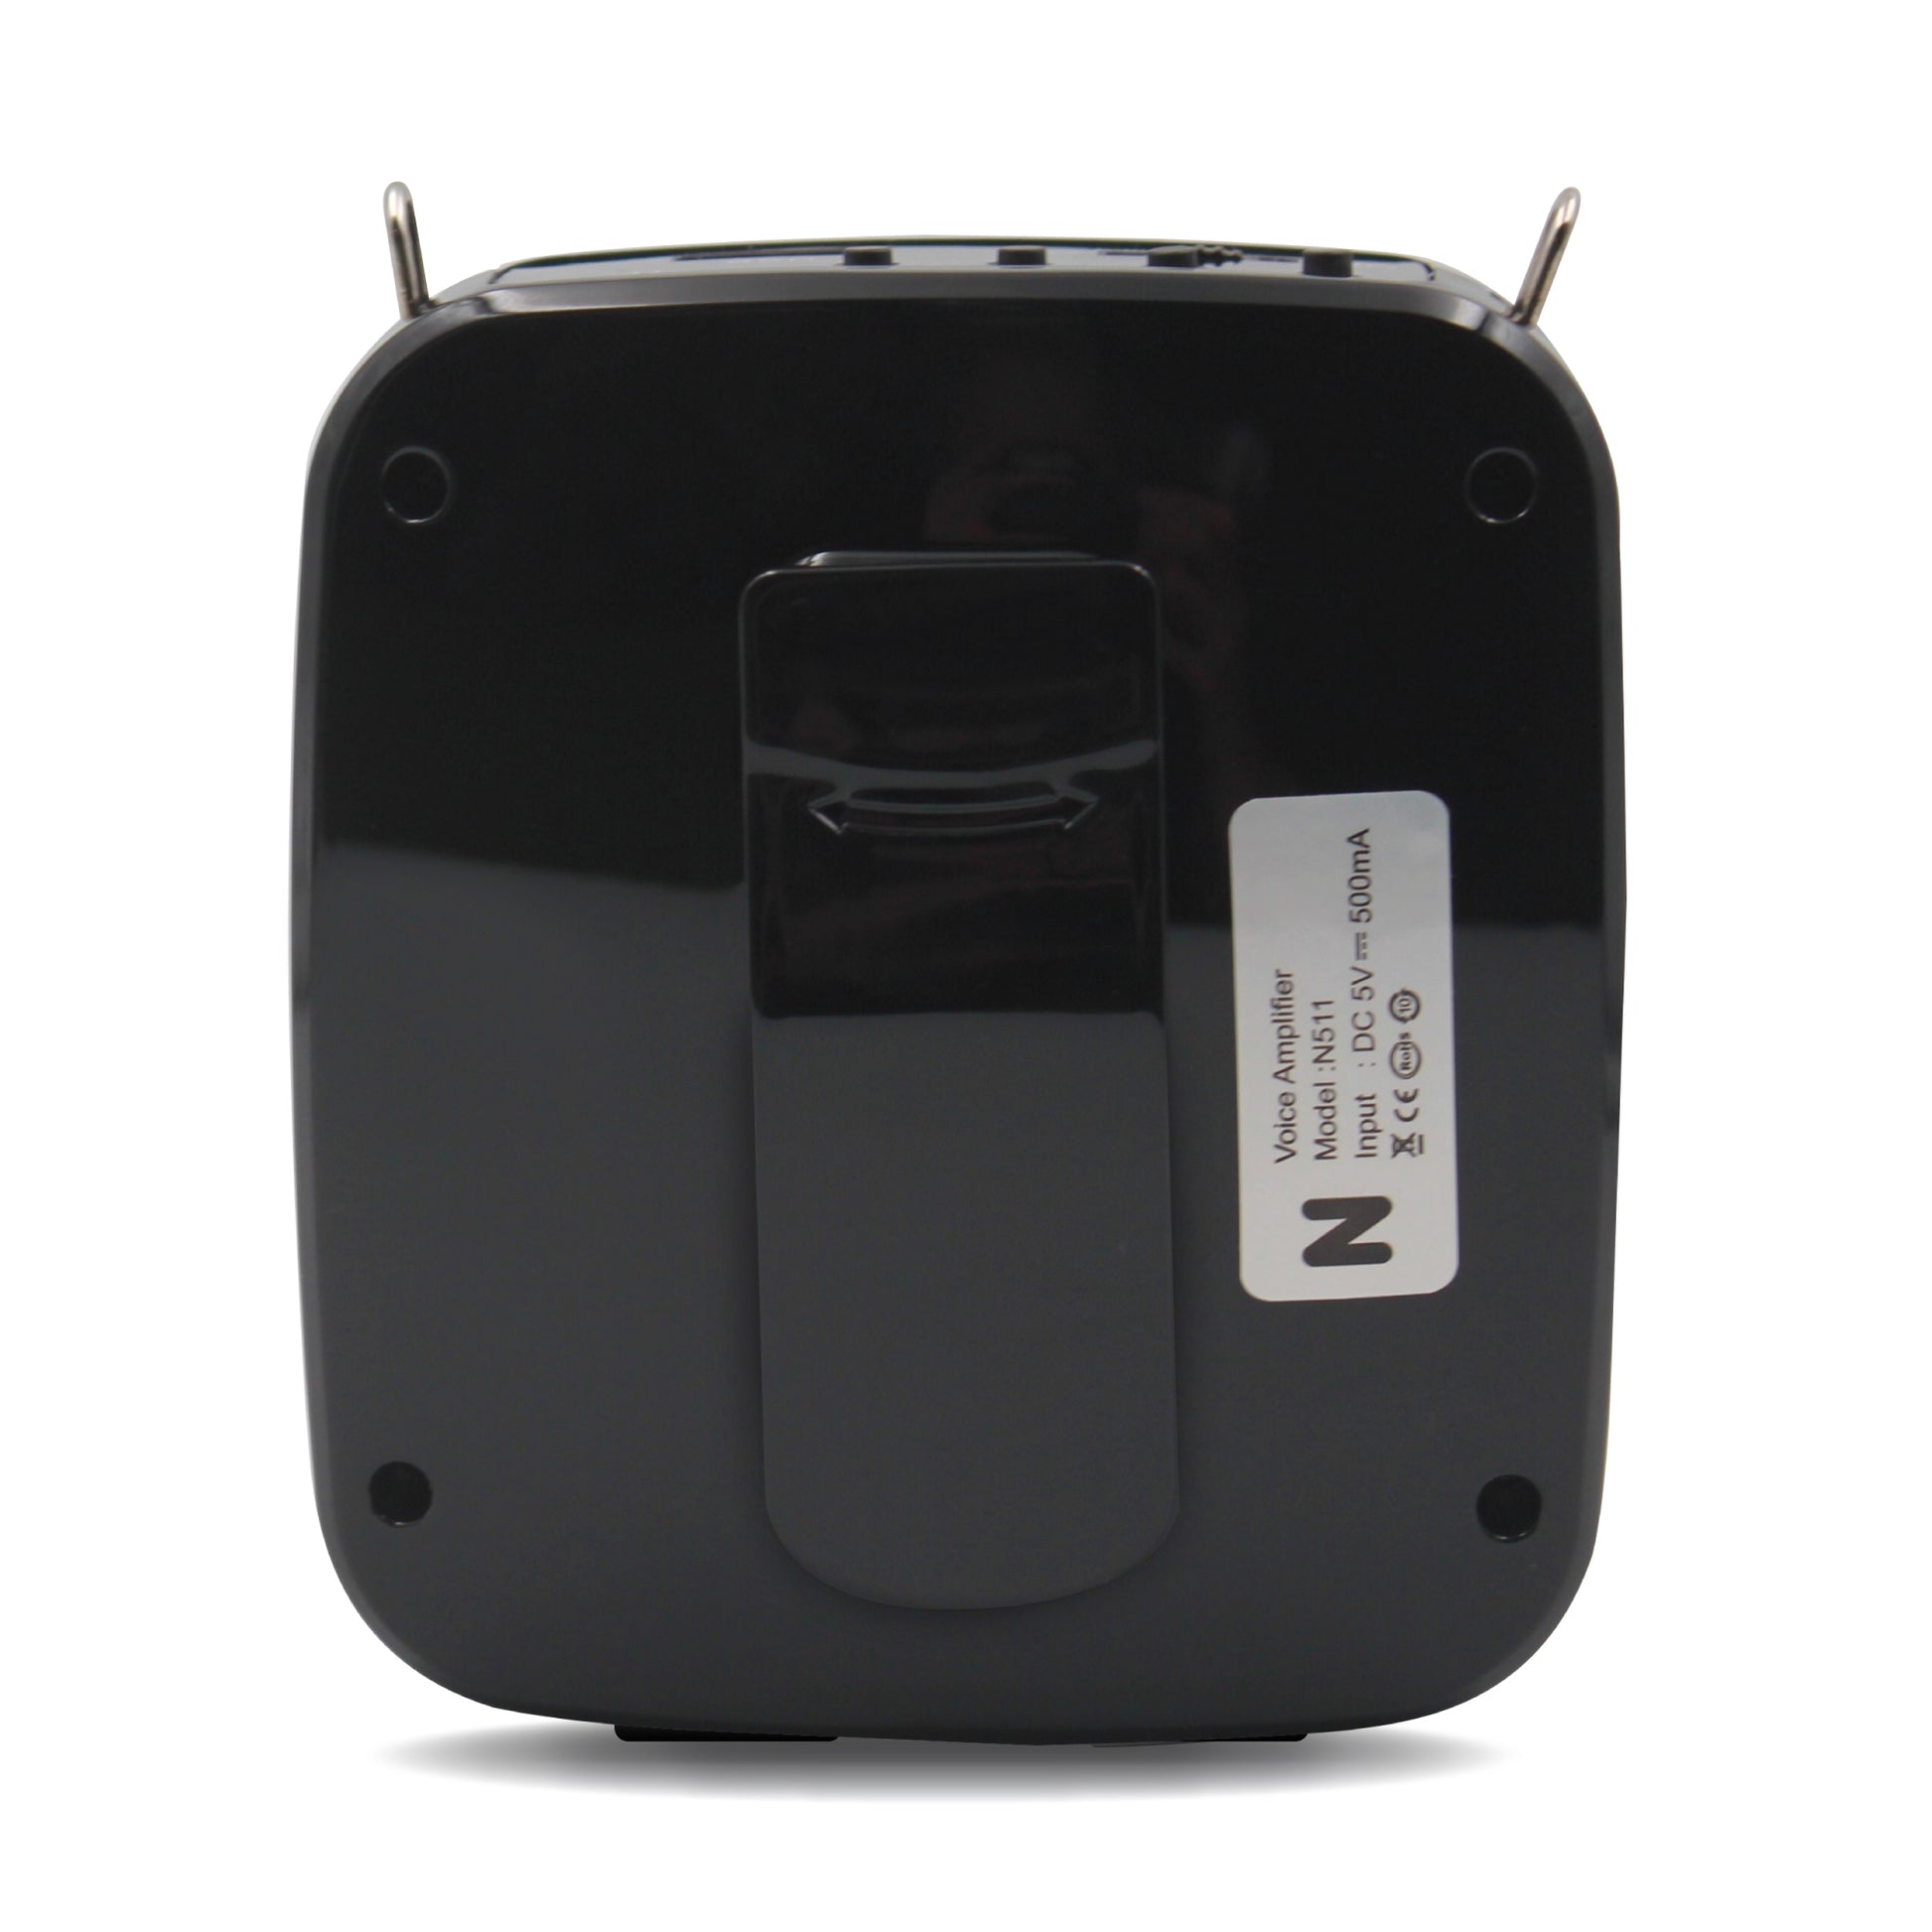 Nefficar Loudspeaker Voice Amplifier Speaker with Mic for Teachers - Nefficar